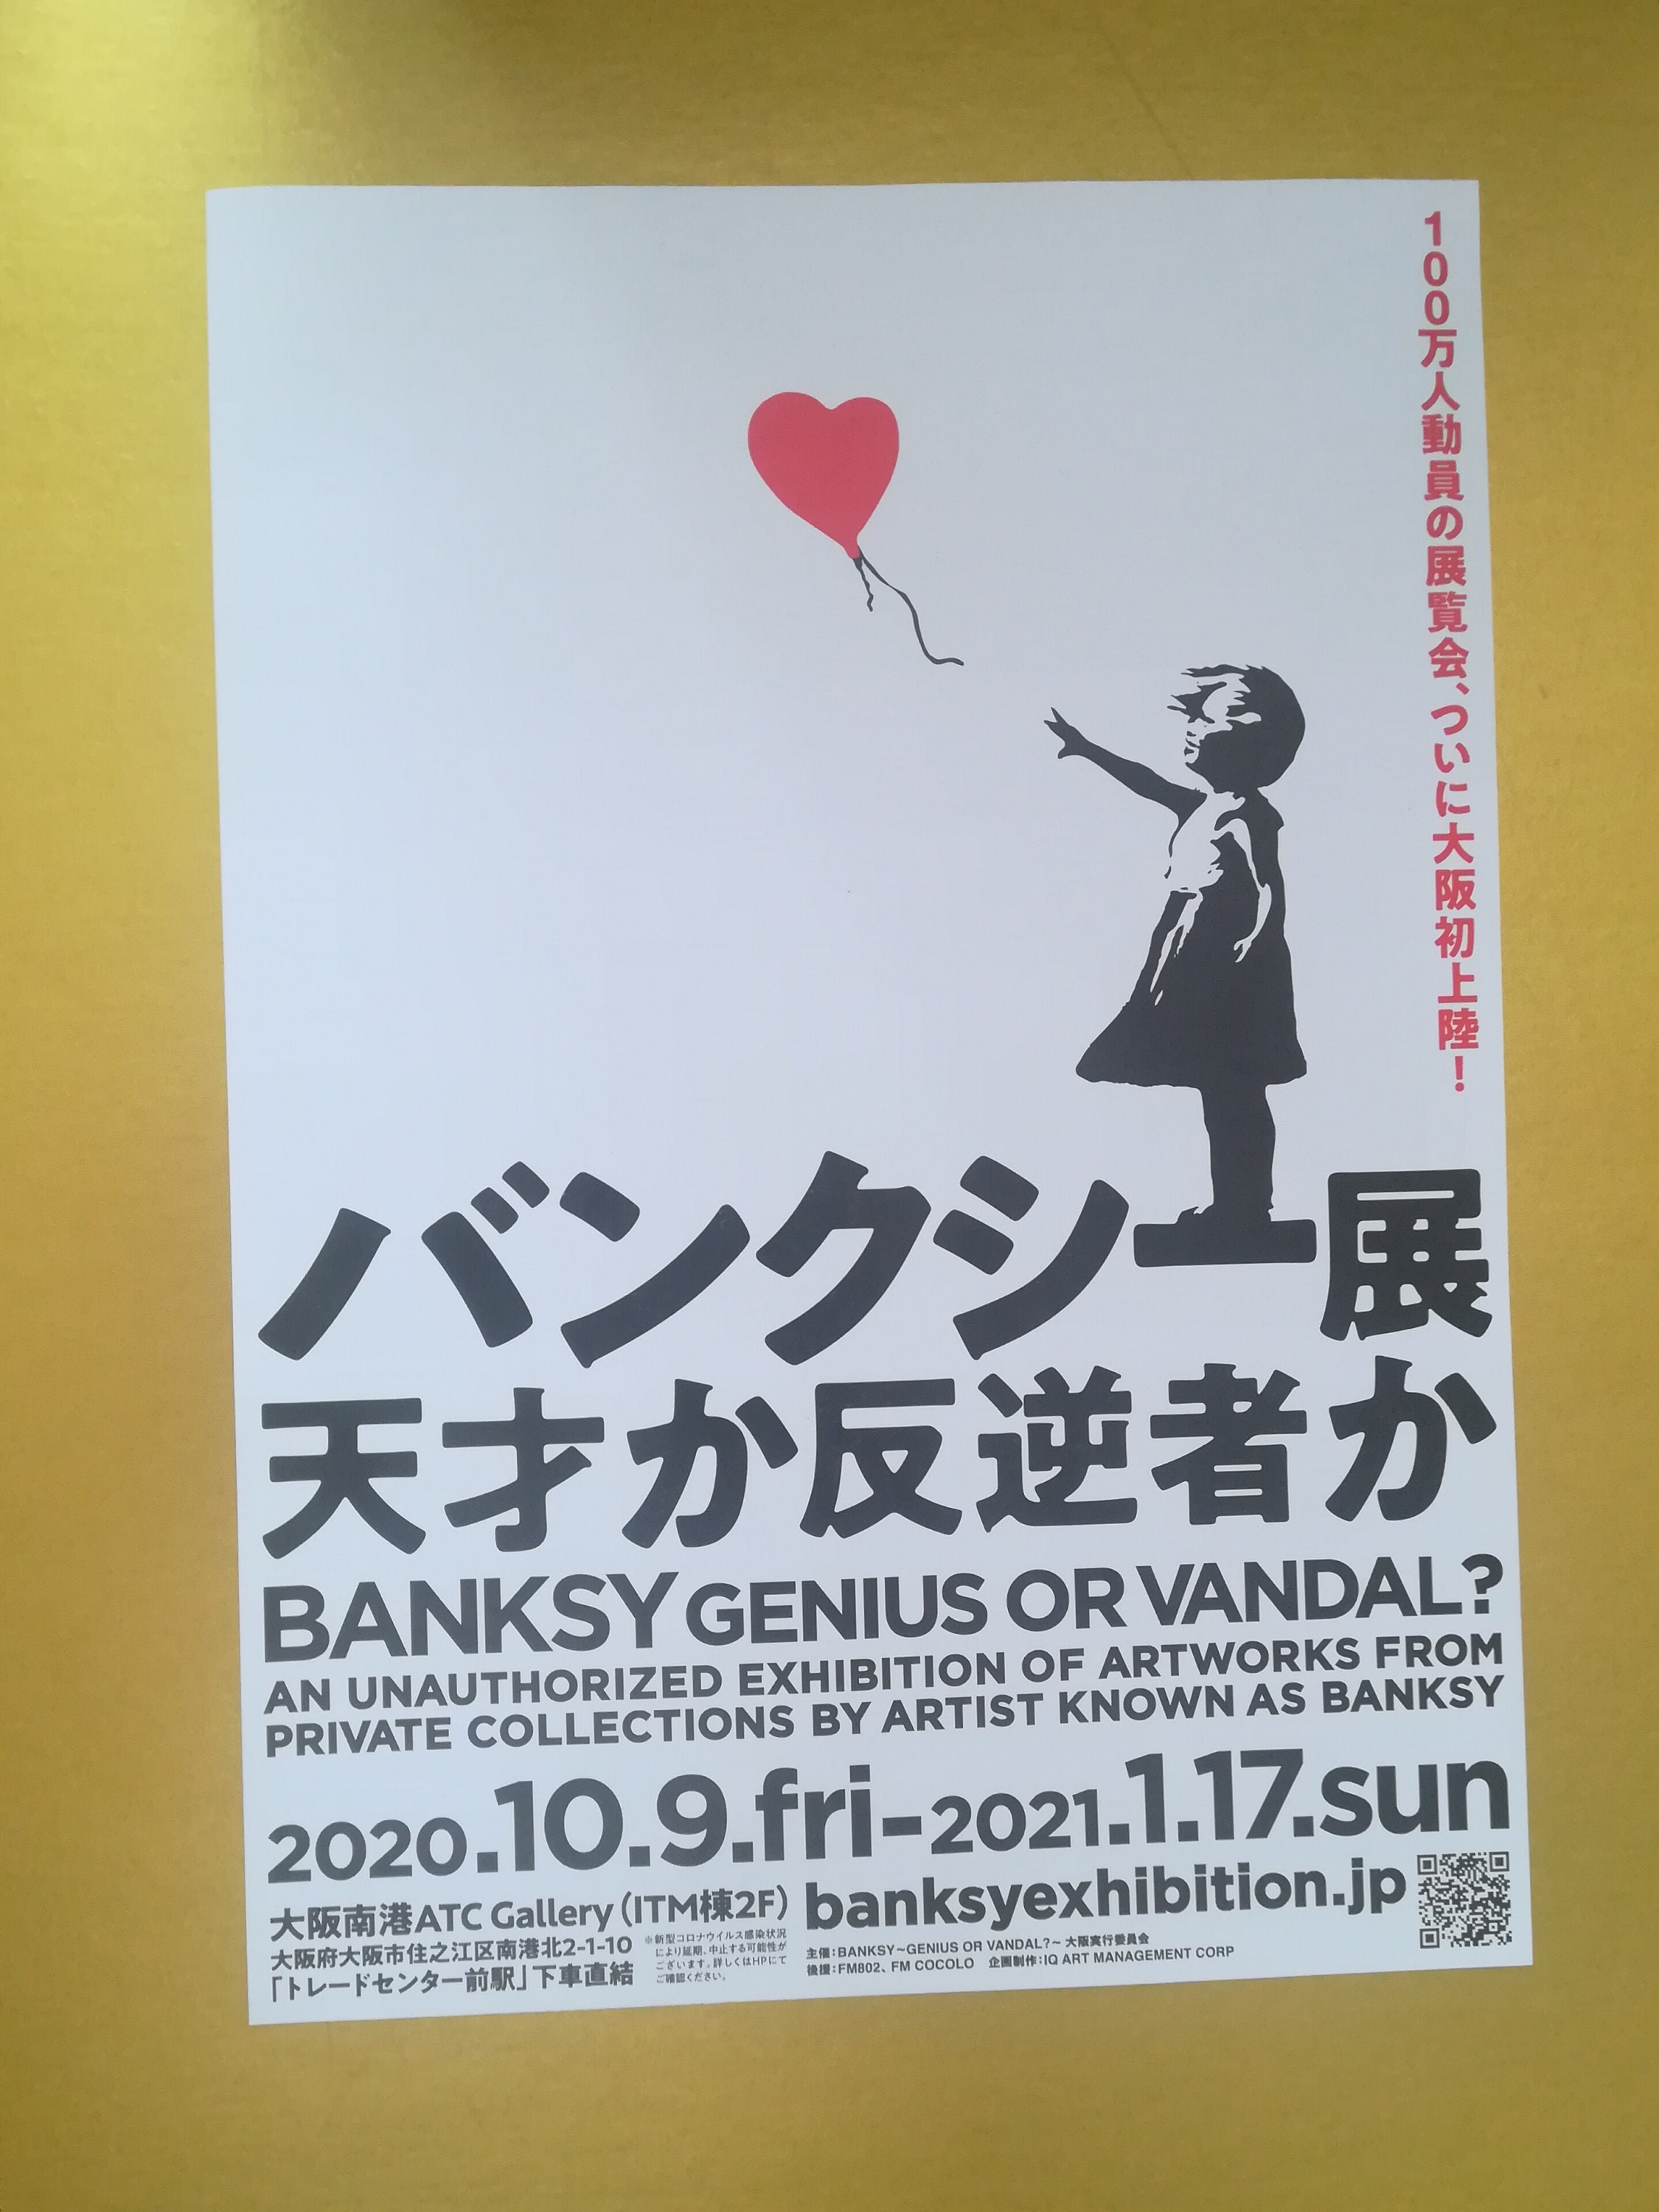 Banksy Poster Exposition Genius Or Vandal Bruxelles - Lanceur de fleur